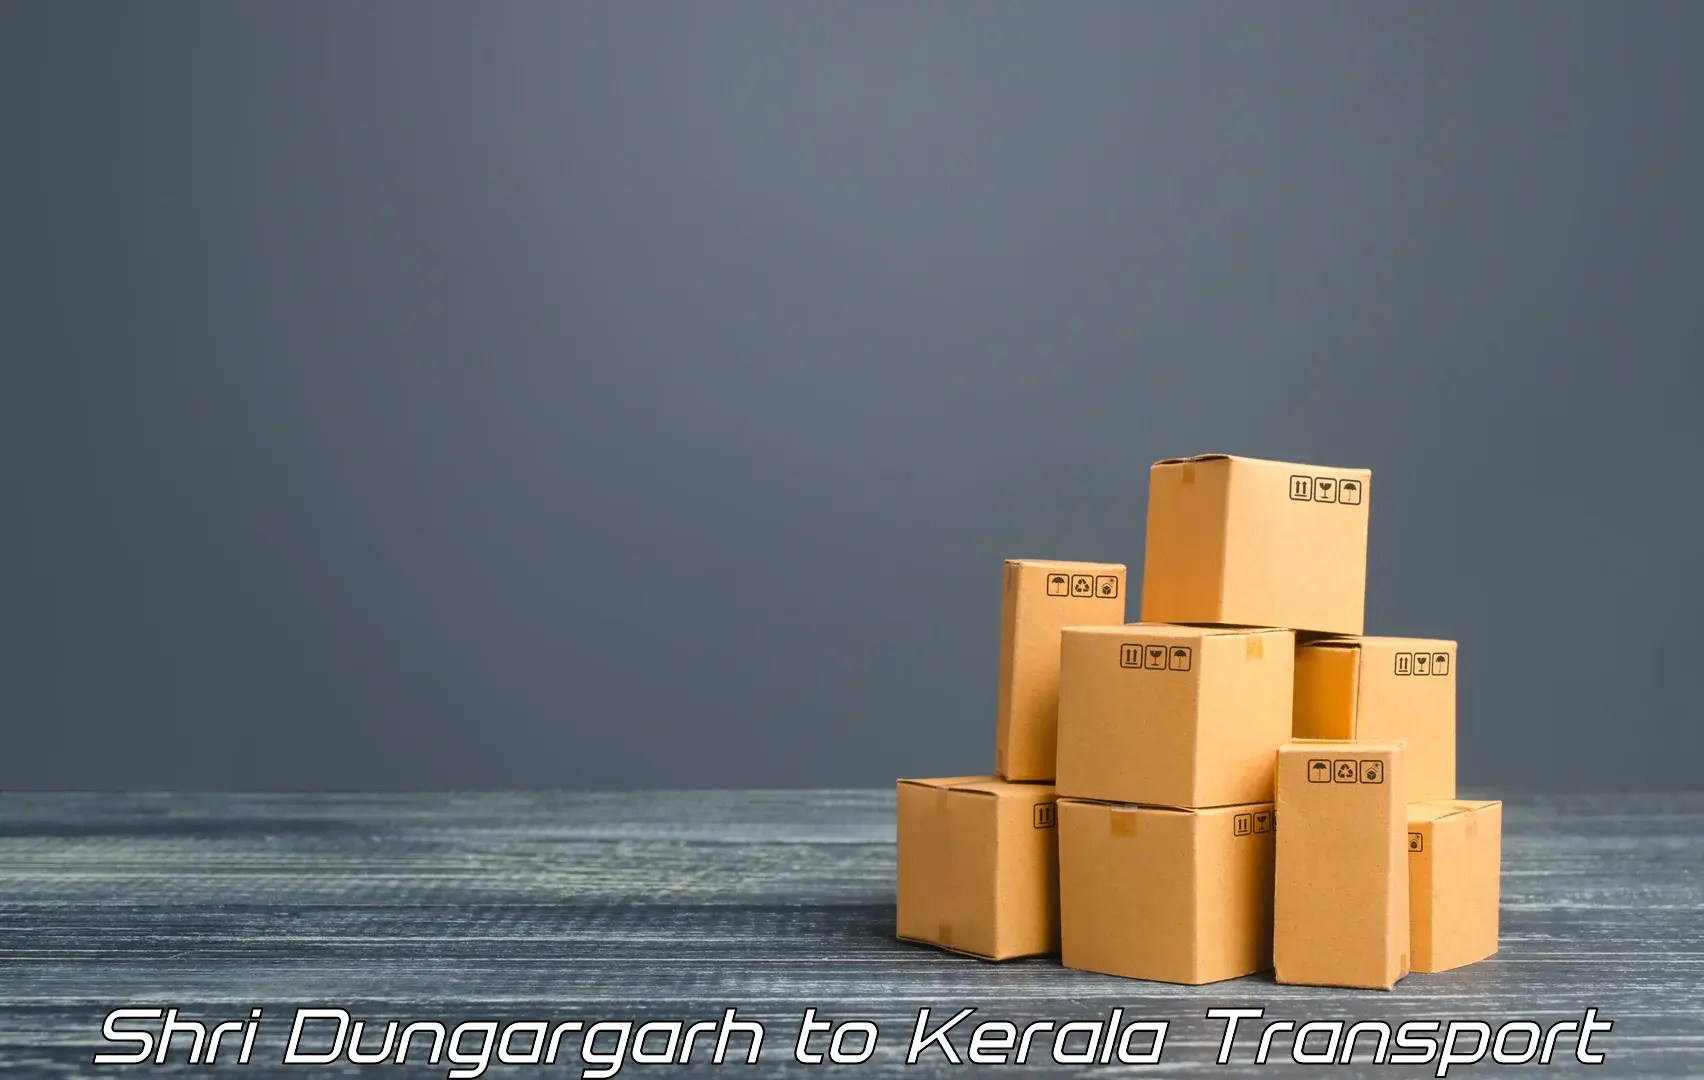 Online transport booking Shri Dungargarh to Manjeri